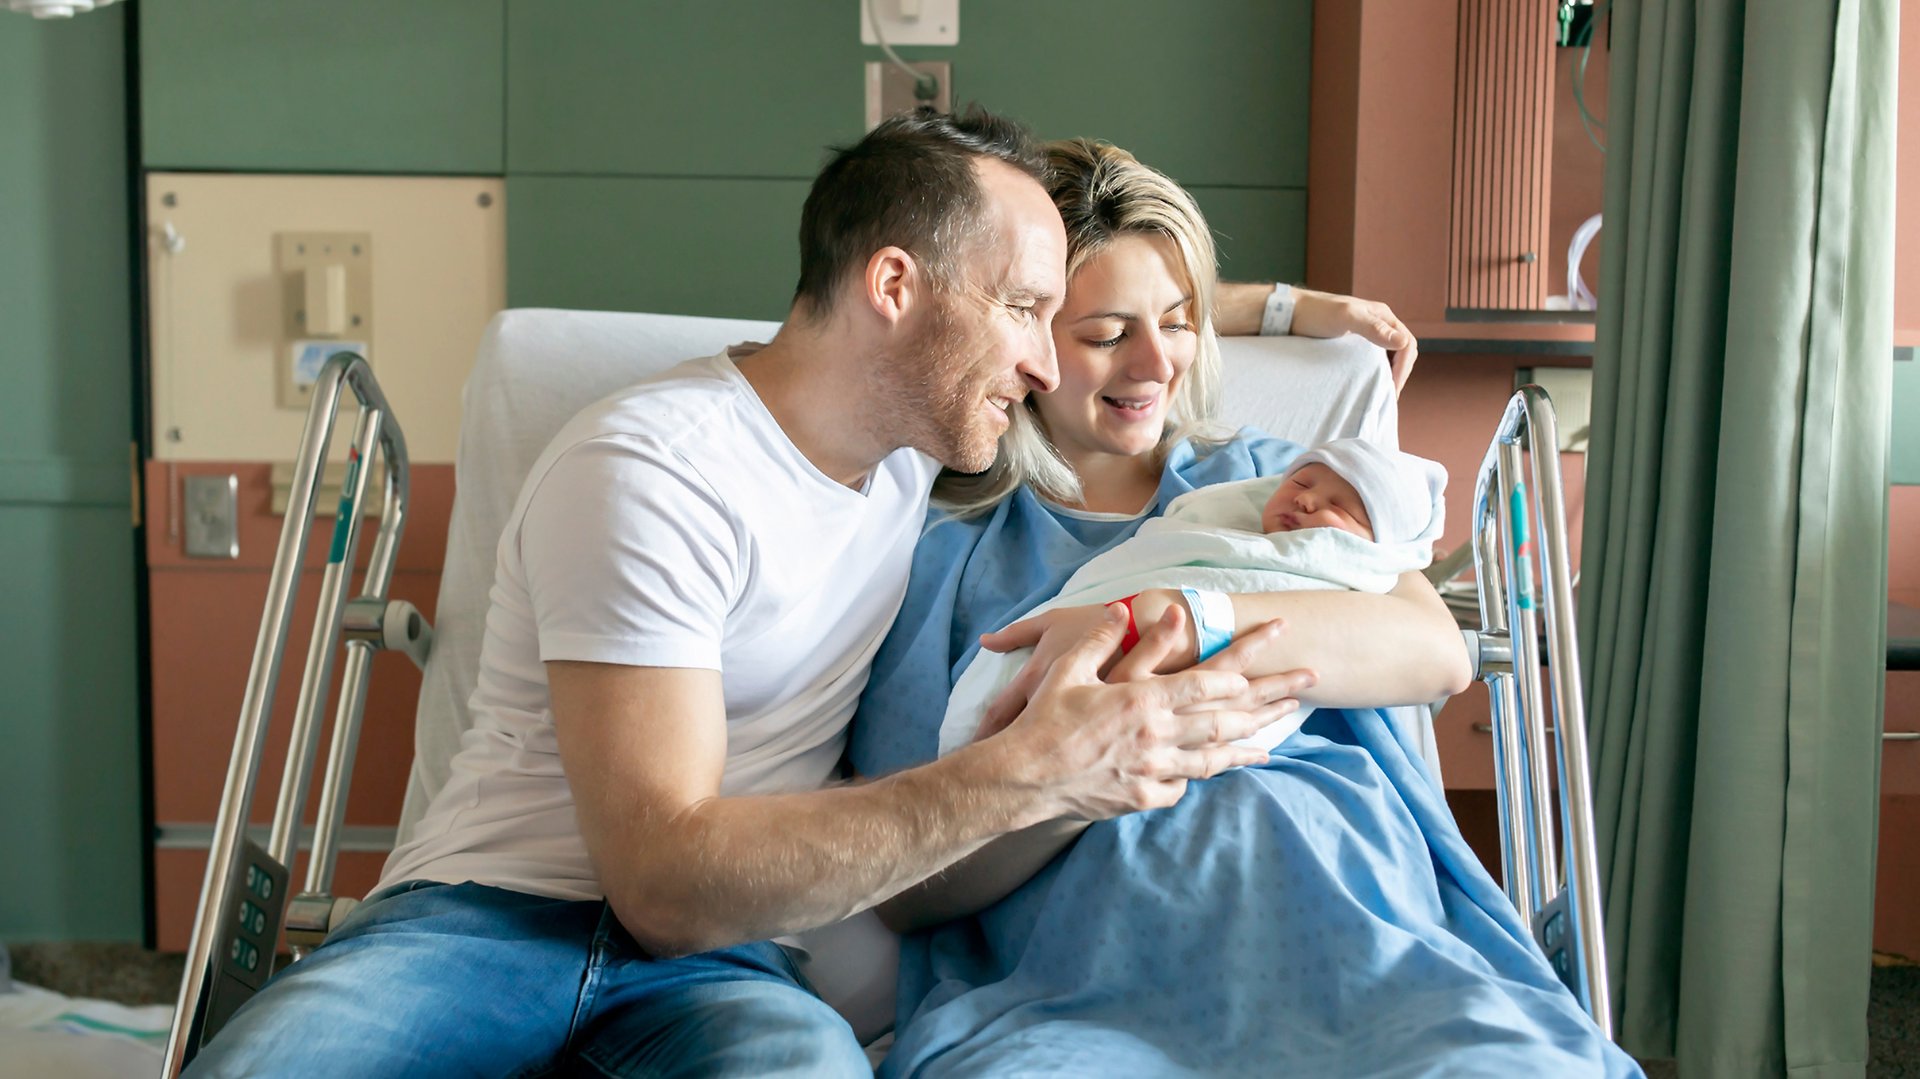 Rodzice przygladaja sie noworodkowi siedzac na szpitalnym lozku